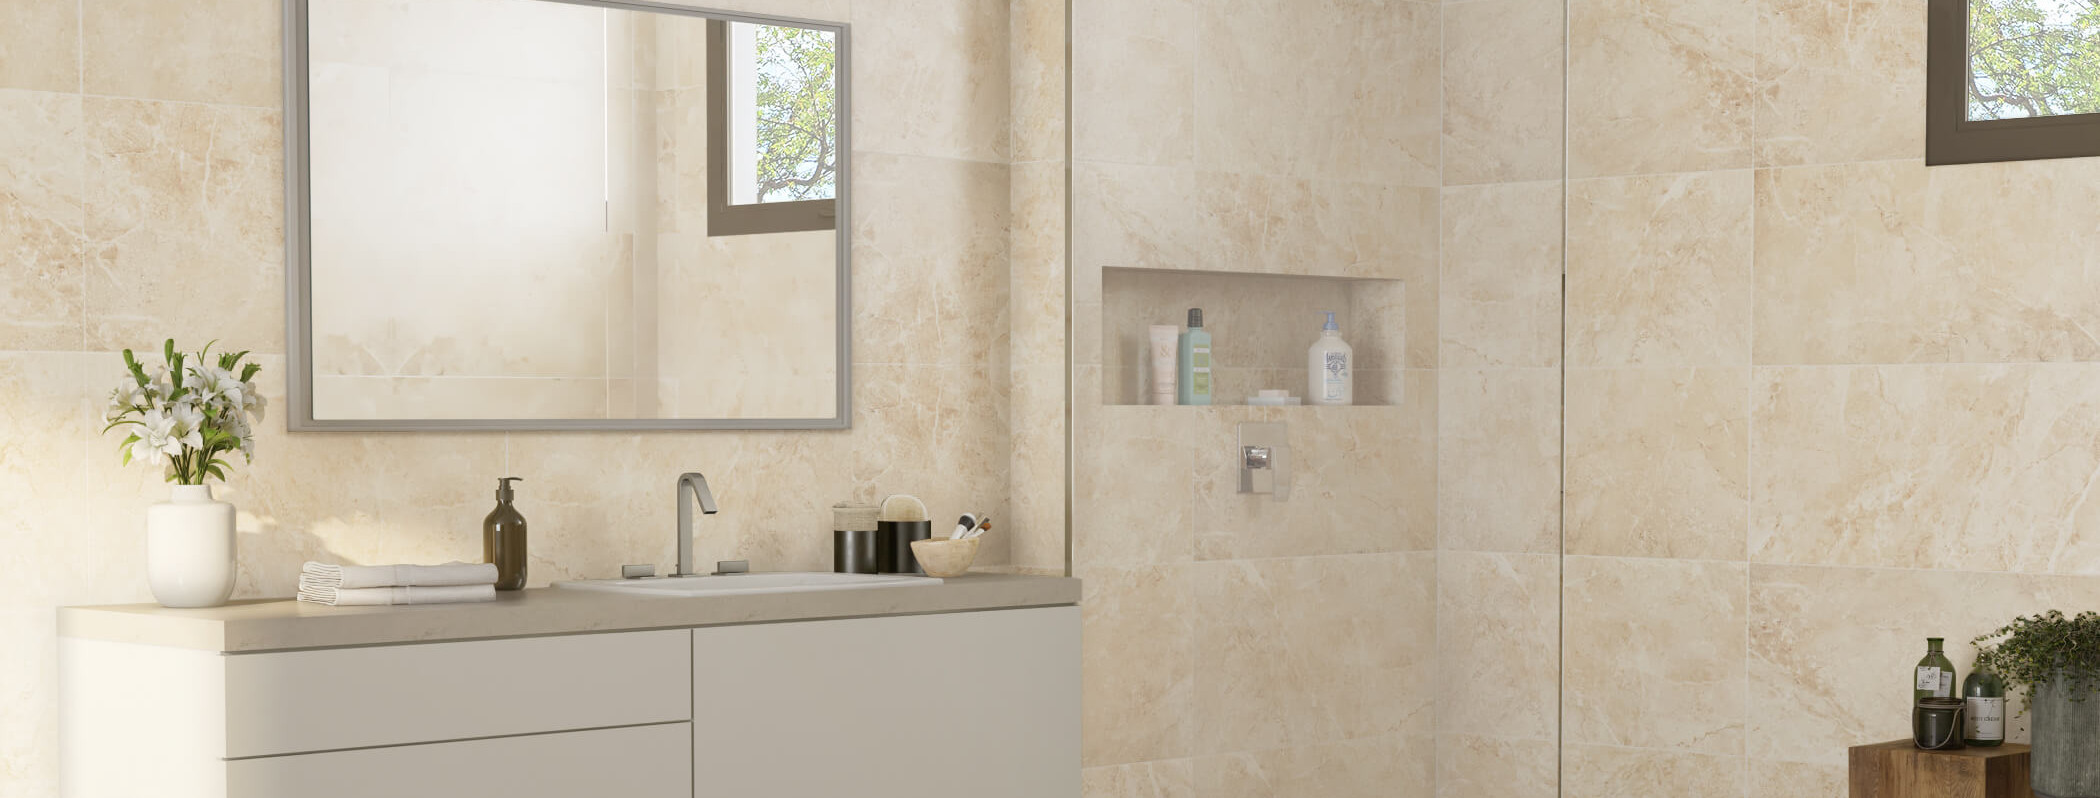 banheiro-revestimento-ceramica-porcelanato-paredes-piso-umidade